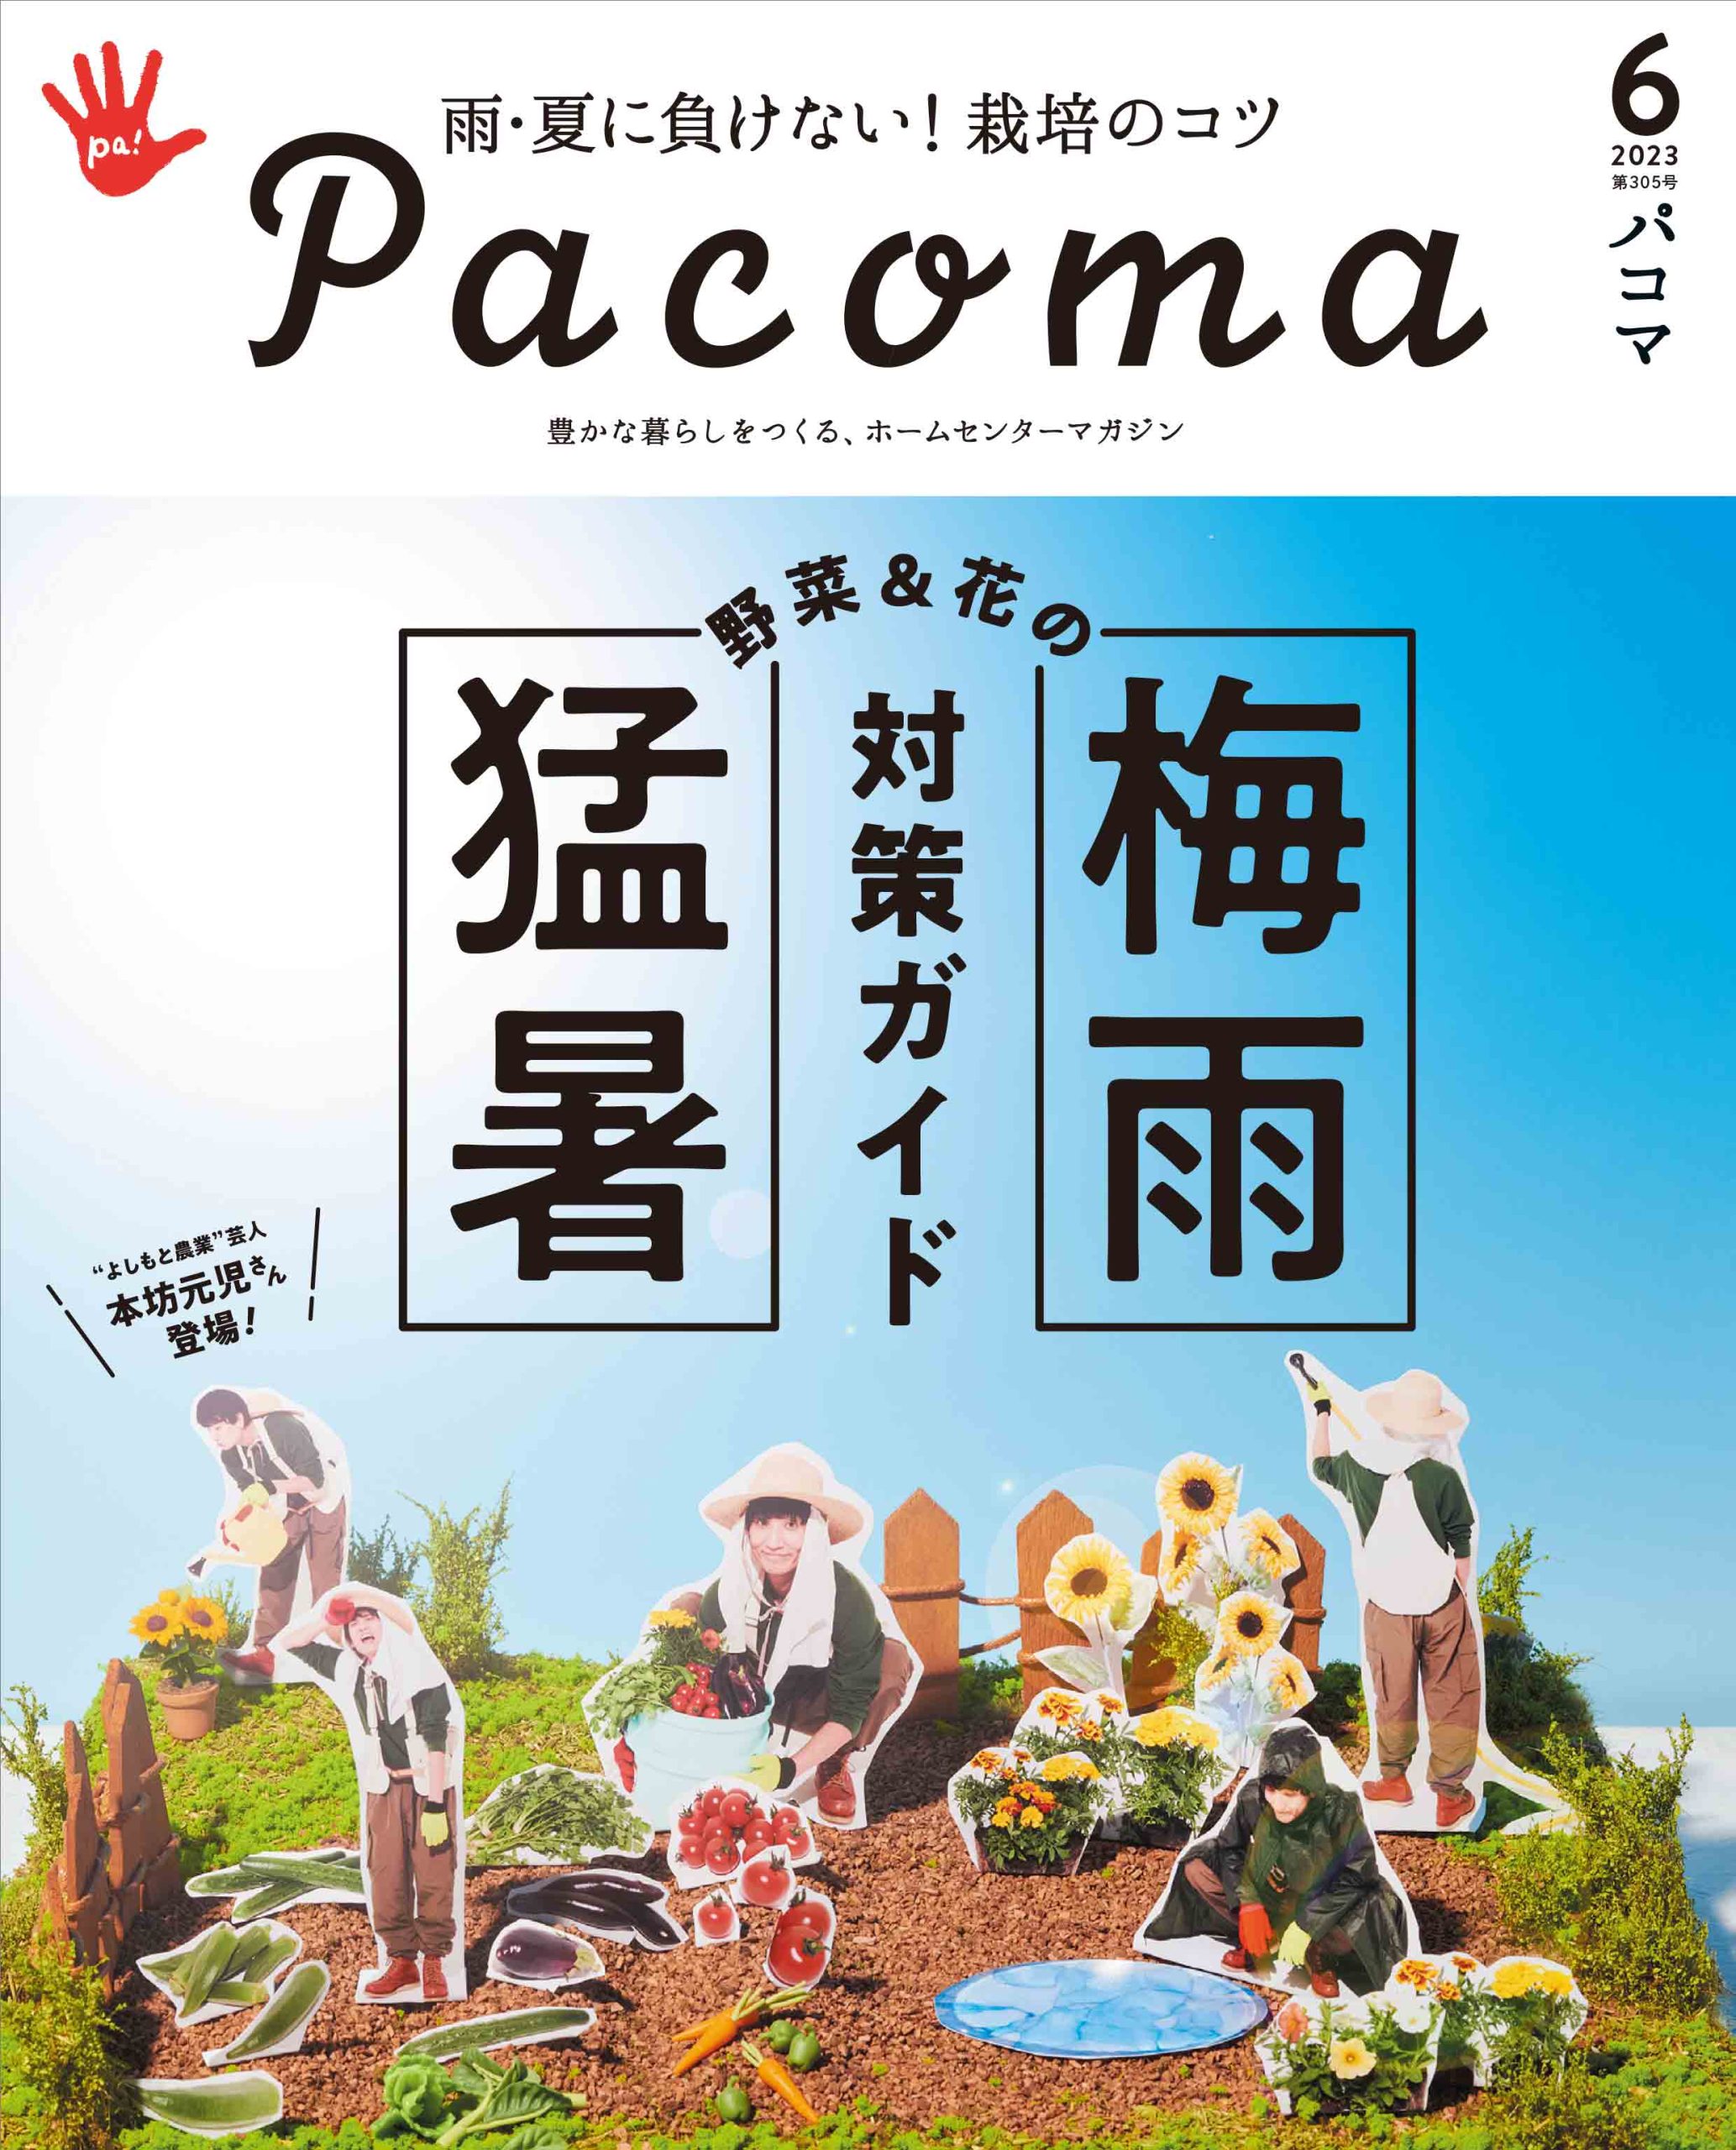 Pacoma工作コンテスト2017結果発表！